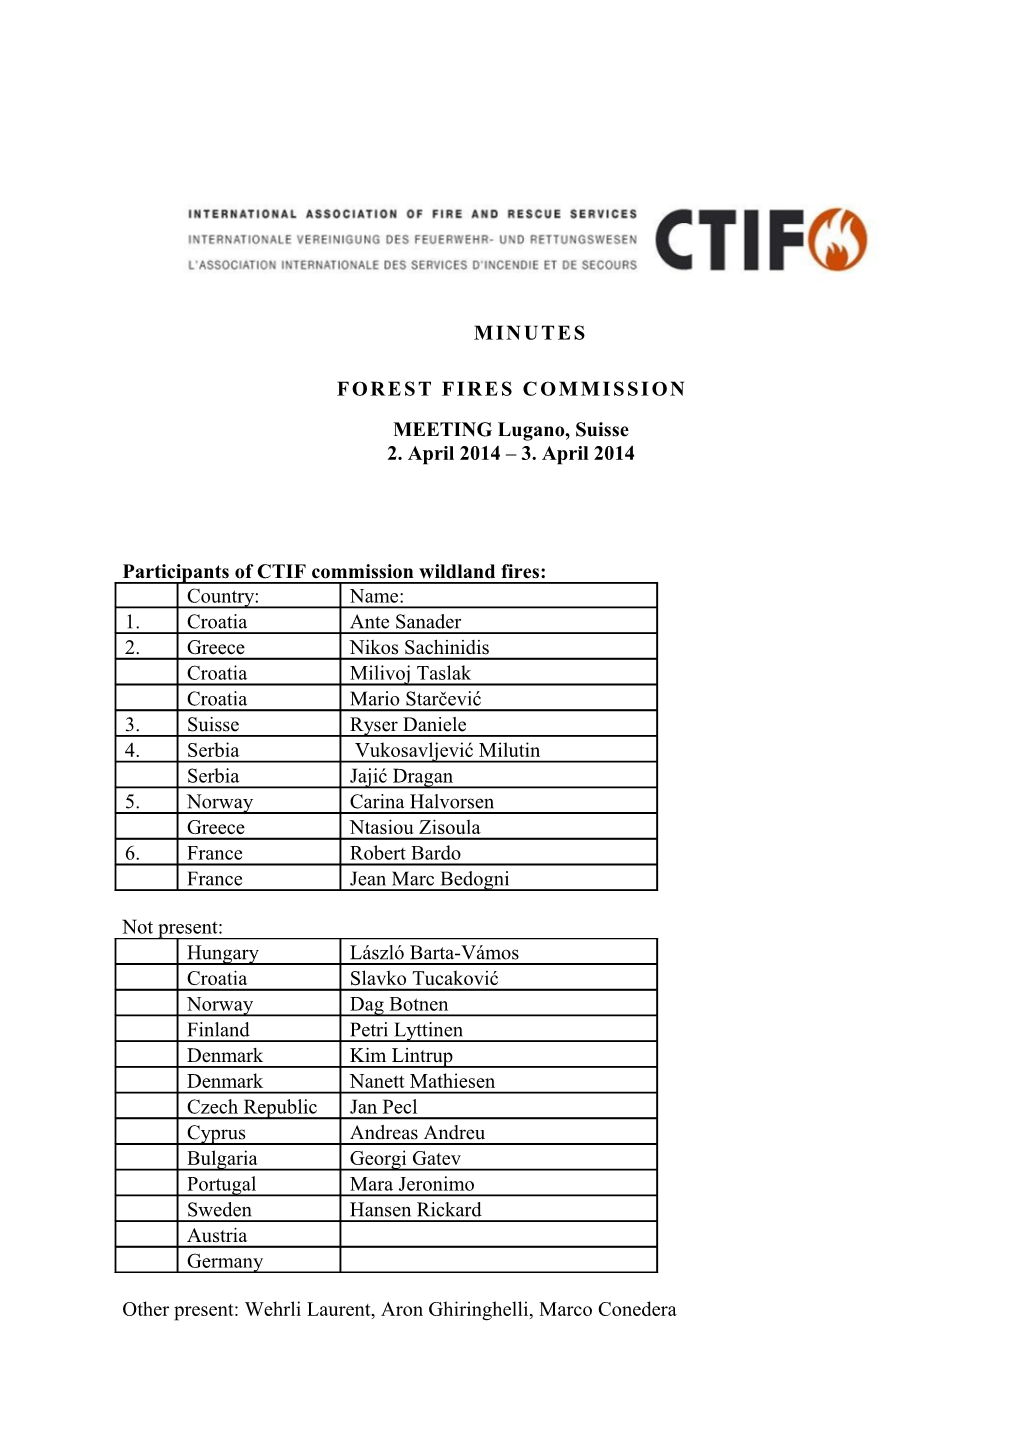 Participants of CTIF Commission Wildland Fires